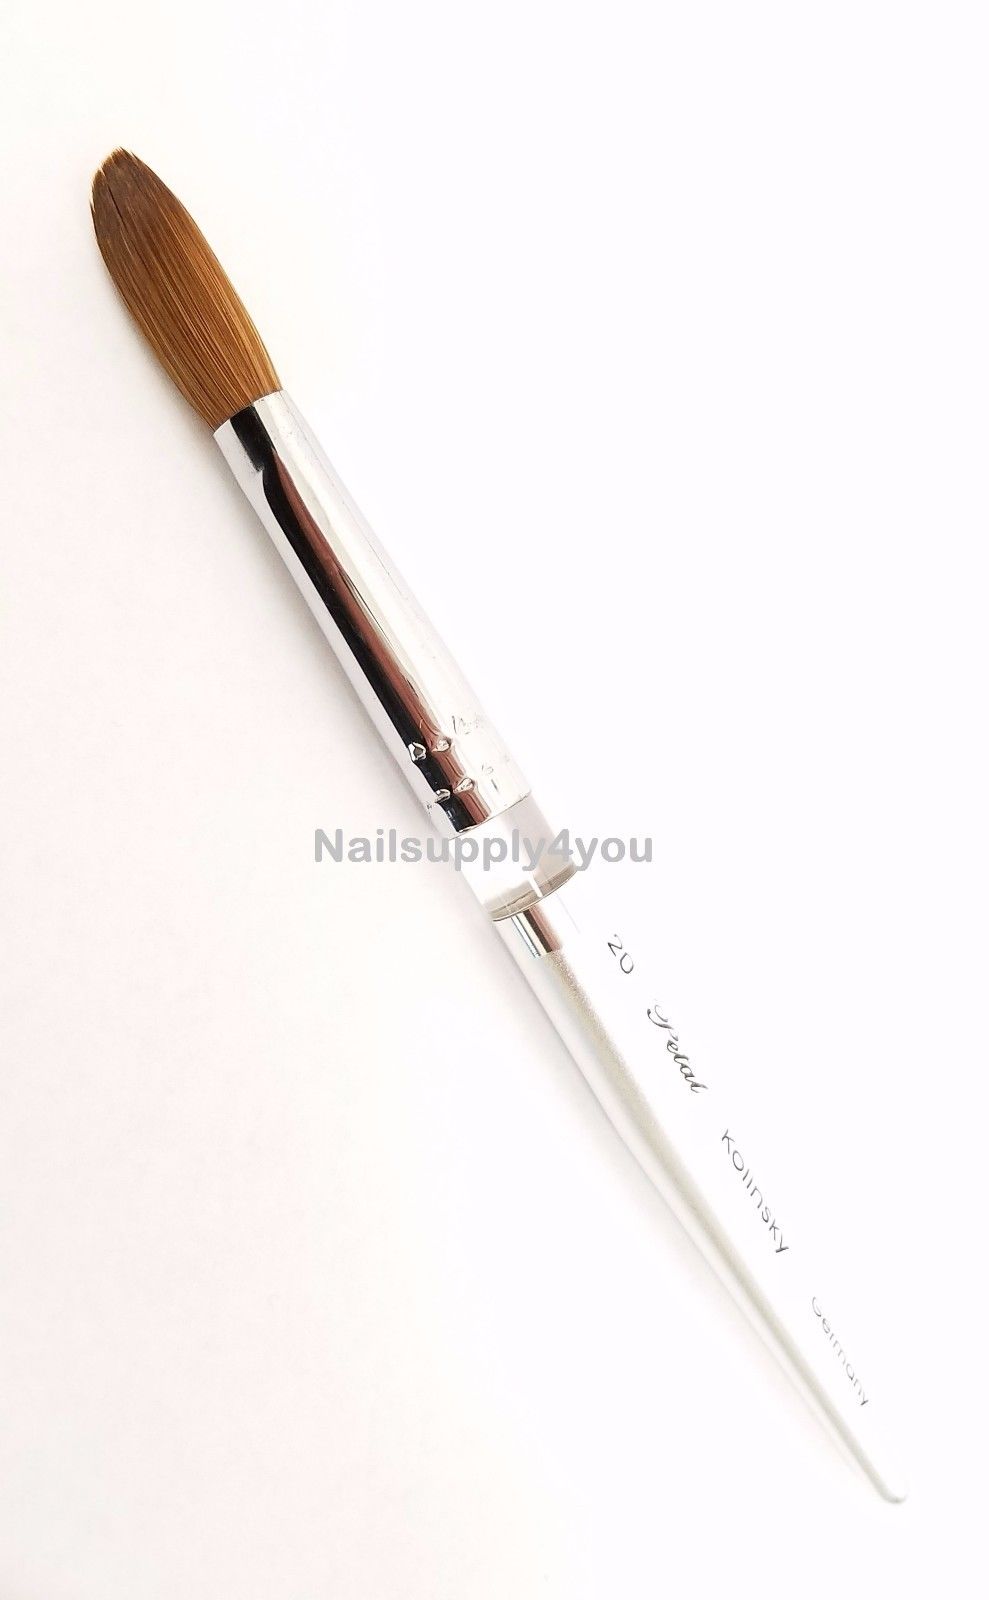 4 pcs Acrylic Nail Brush Round Shaped Handle Acrylic Brush Nail